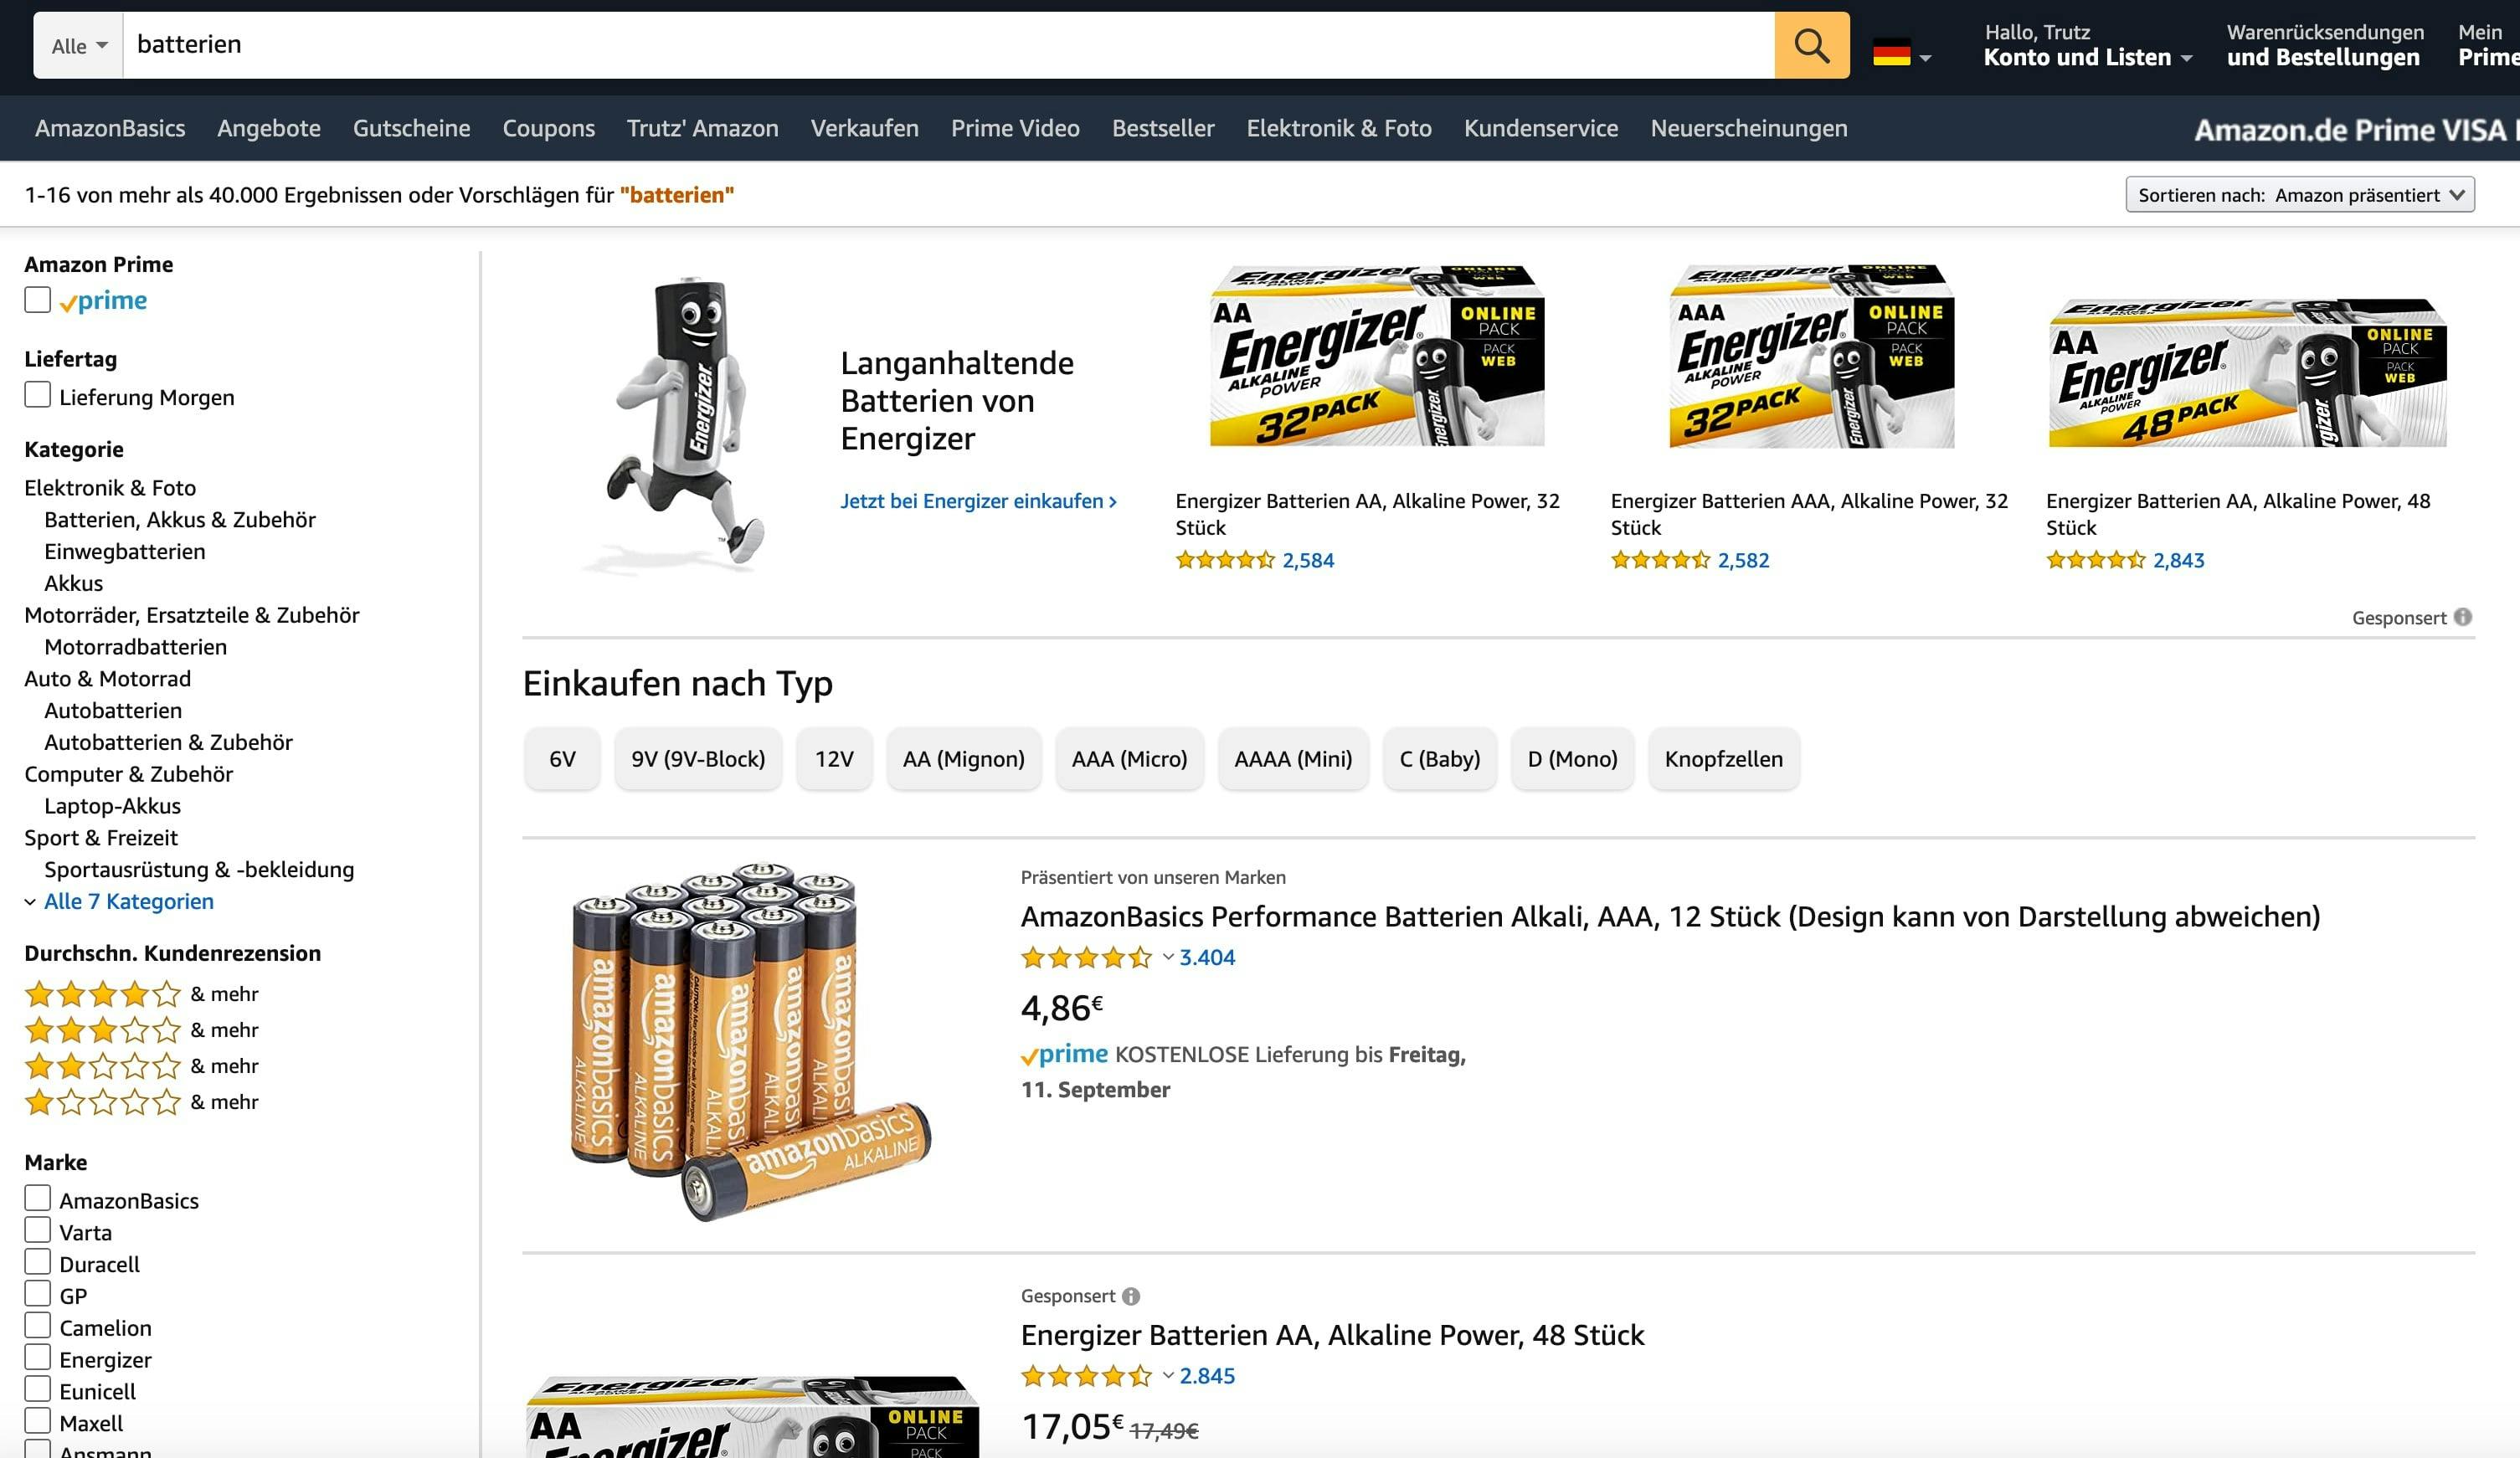 Amazon Basics Präsentiert von unseren Marken